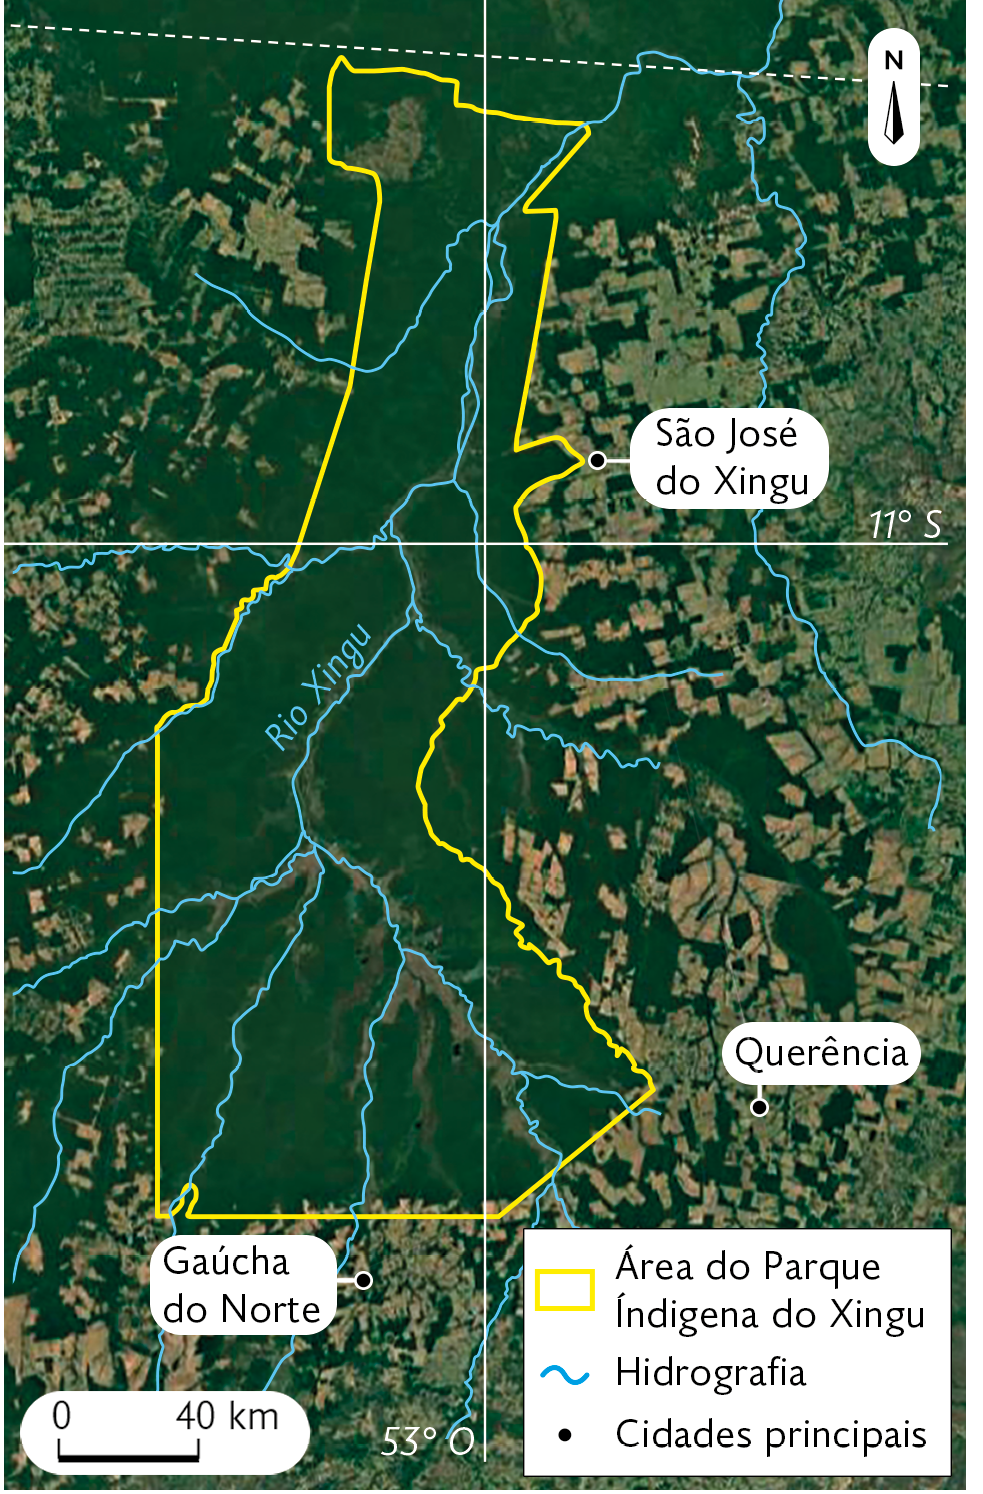 Fotografia. Imagem de Satélite destacando a área do Parque Indígena do Xingu, uma área coberta por vegetação, ao redor do Rio Xingu. Também estão destacadas as principais cidades: São José do Xingu, Querência e Gaúcha do Norte. No canto superior direito, seta apontando para o norte e no canto inferior esquerdo, a escala: 40 quilômetros por centímetro.